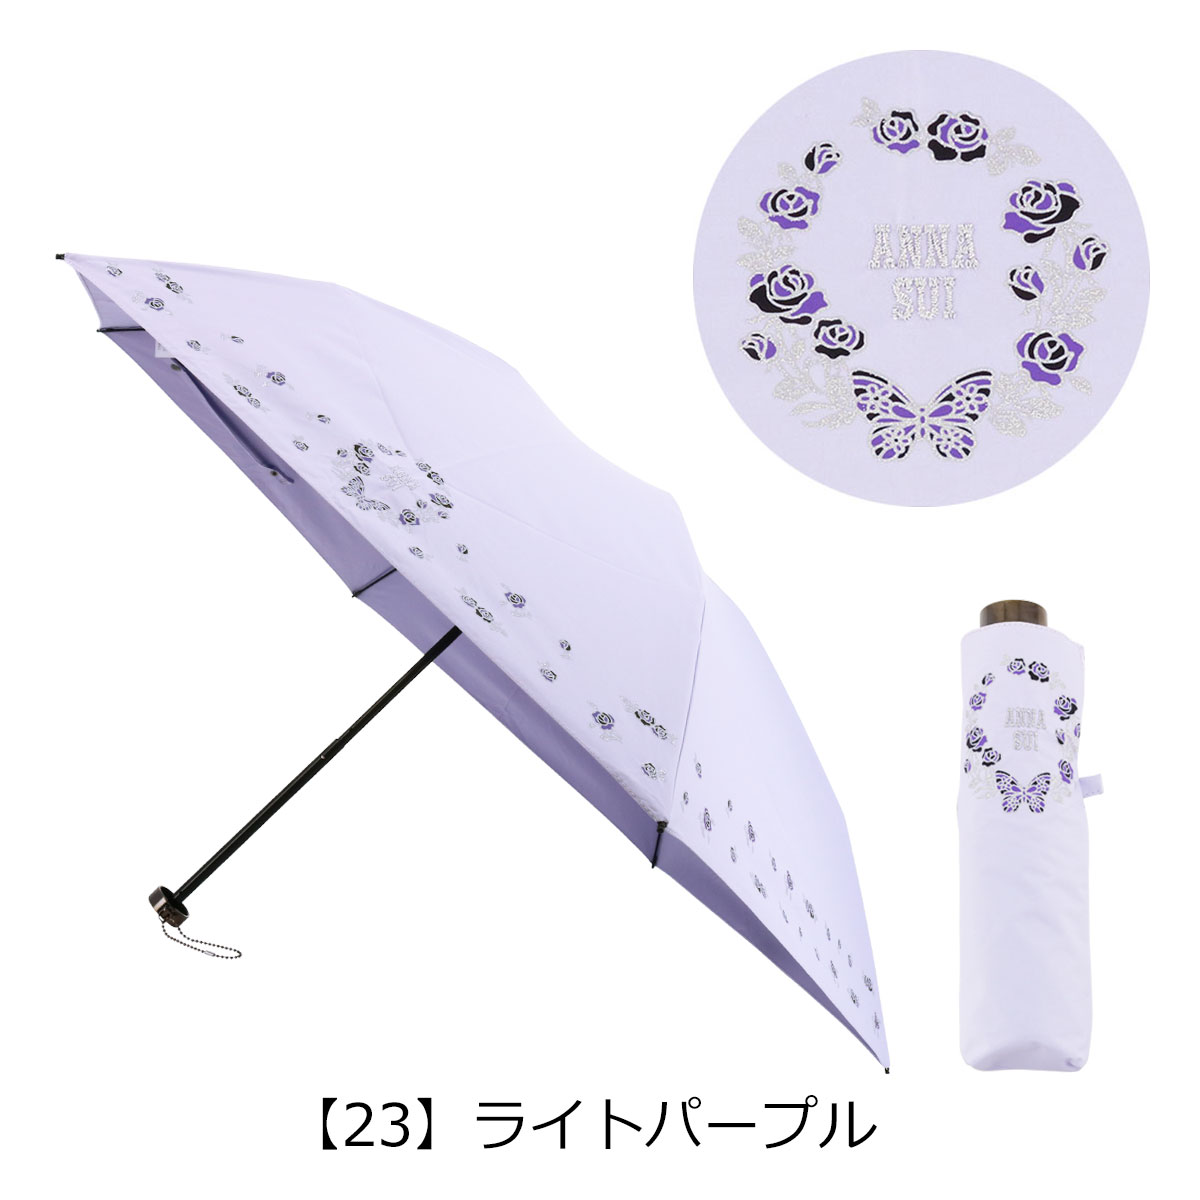 アナスイ 折りたたみ傘 雨傘 日傘 バタフライ×ローズ 1AS27017-17 ANNA 